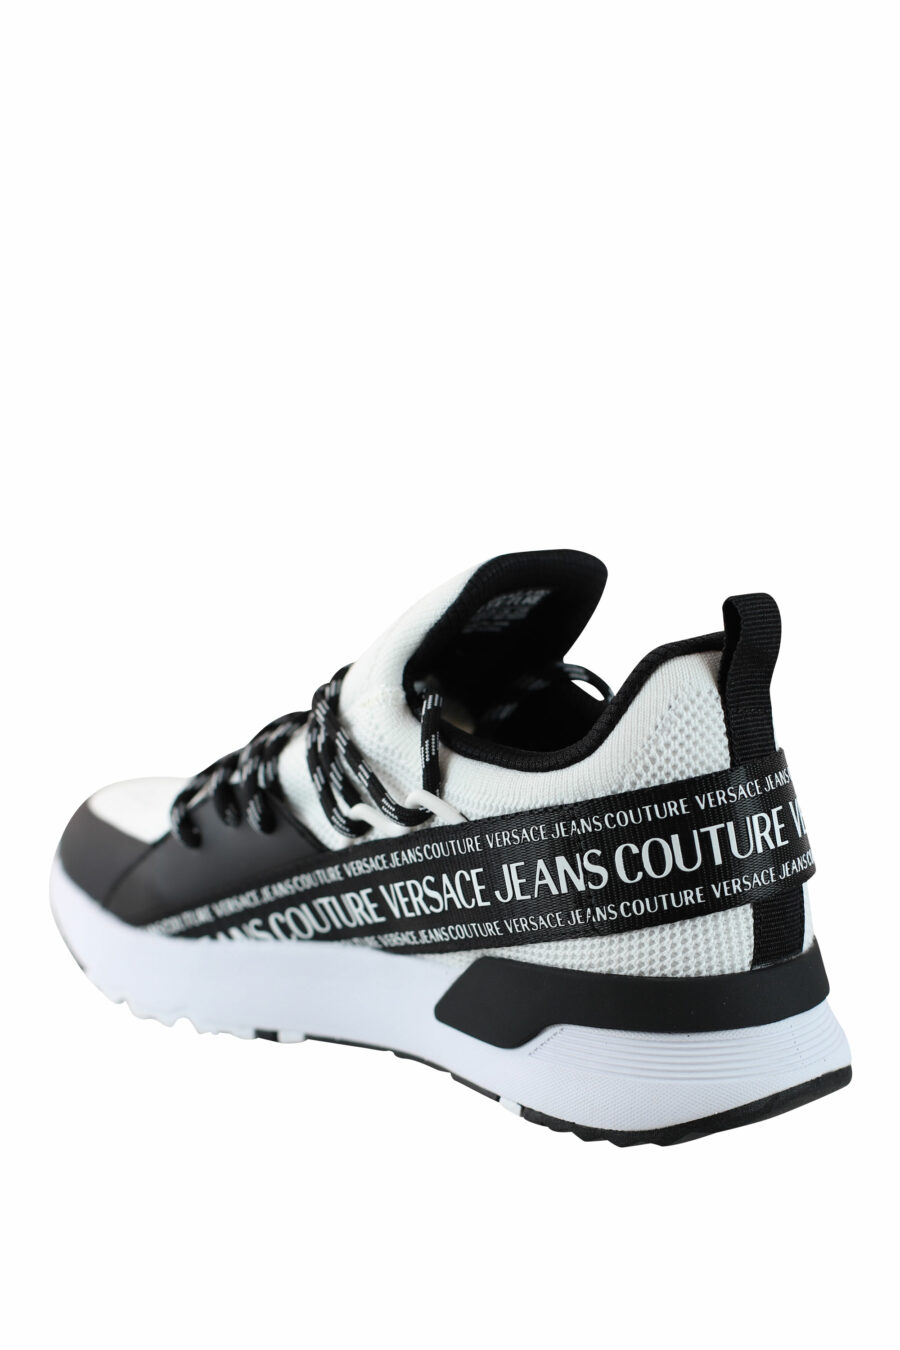 Zapatillas blancas y negras "dynamic" estilo calcetin con logo en cinta - IMG 4516